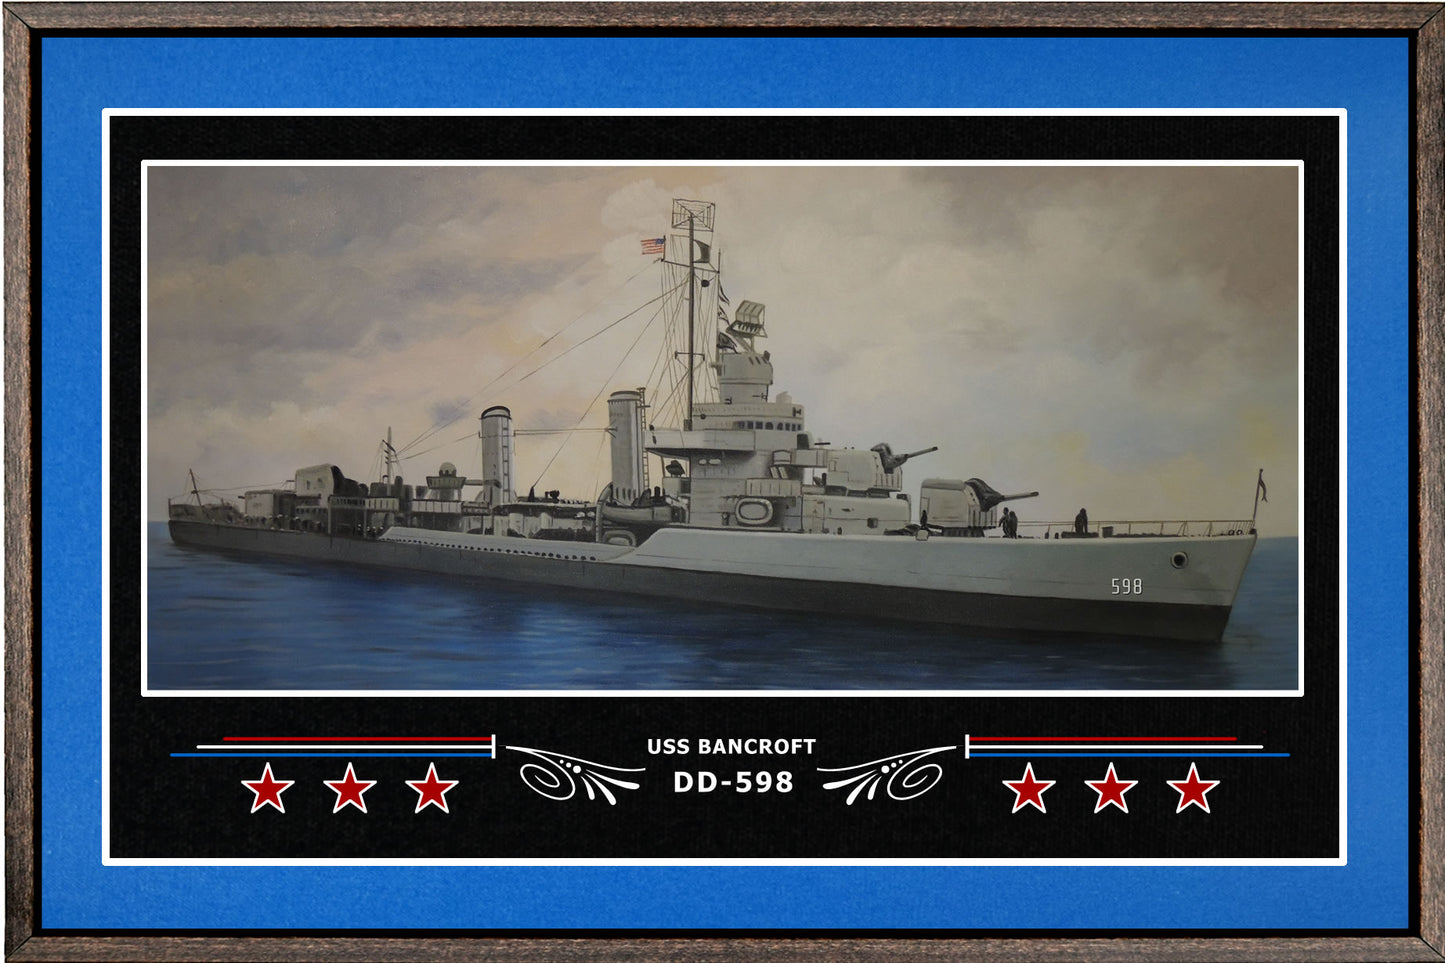 USS BANCROFT DD 598 BOX FRAMED CANVAS ART BLUE